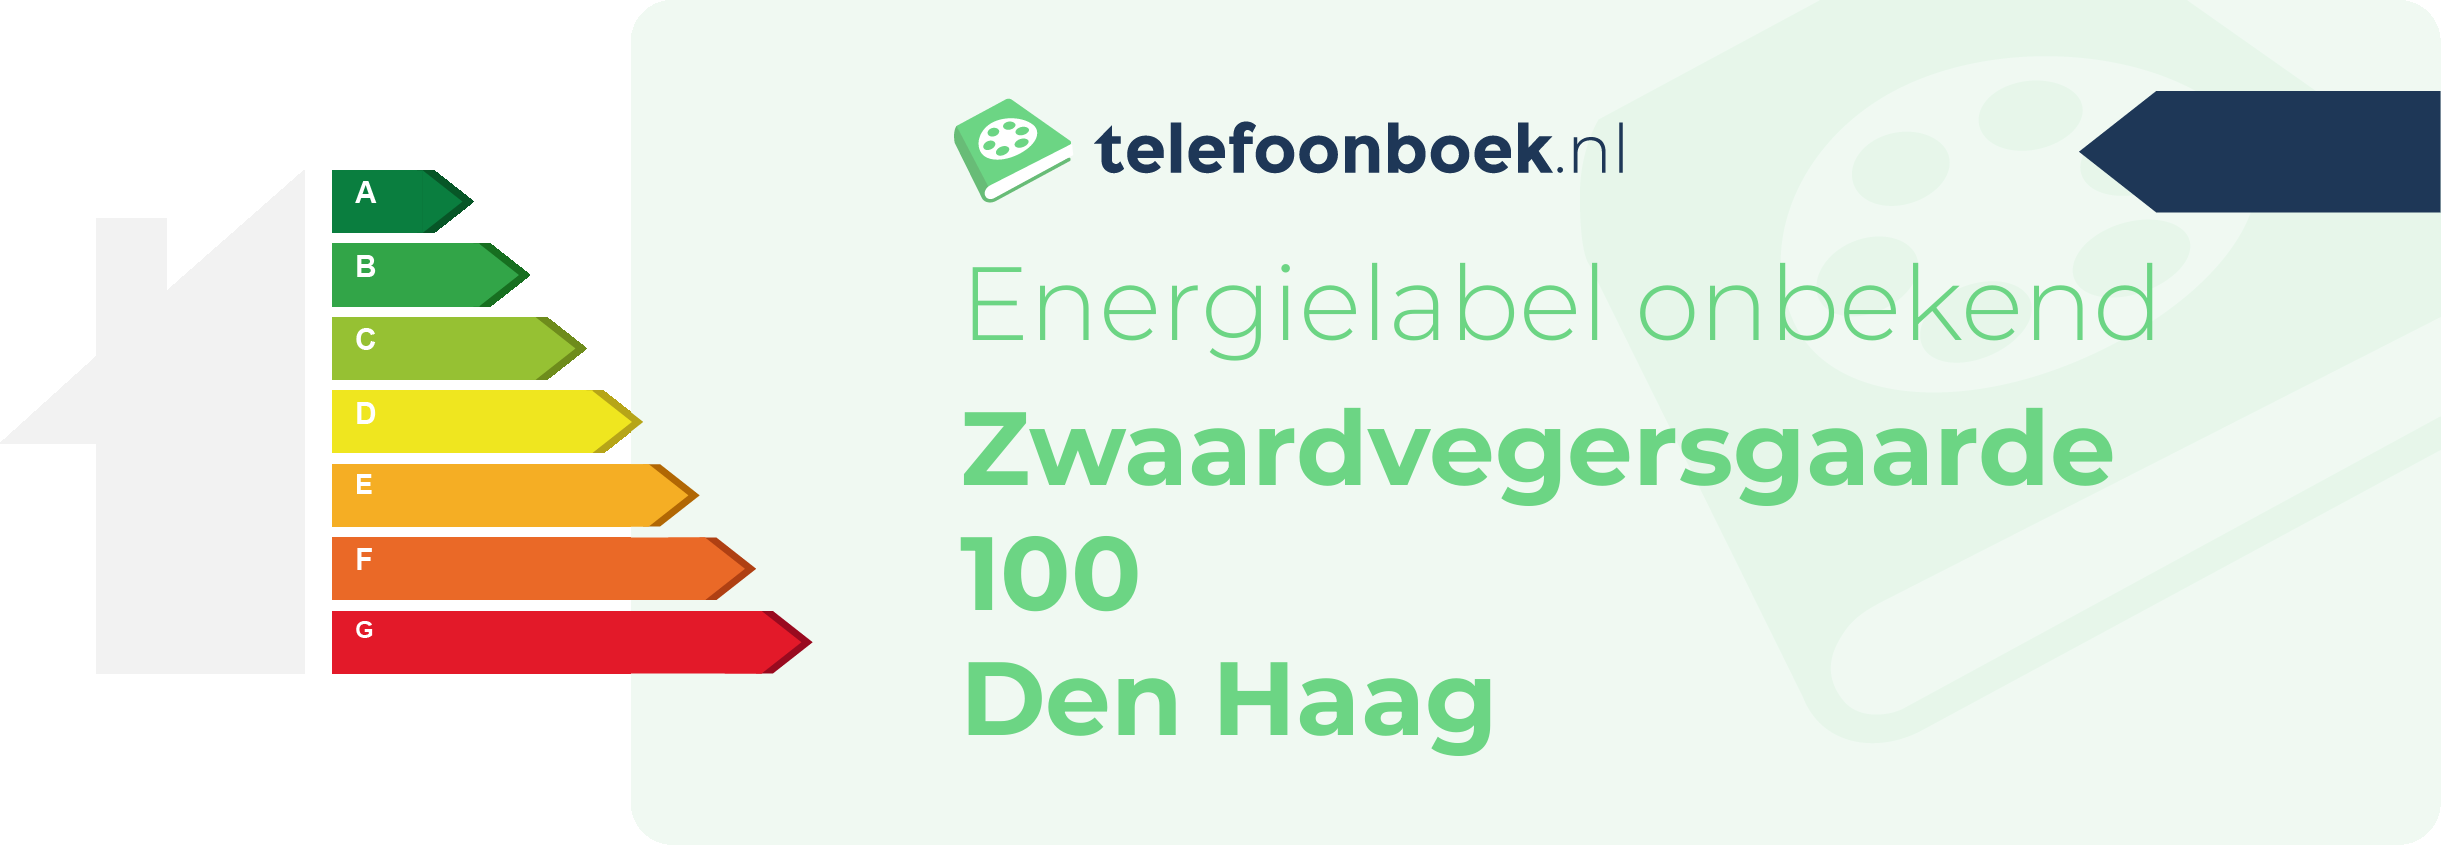 Energielabel Zwaardvegersgaarde 100 Den Haag